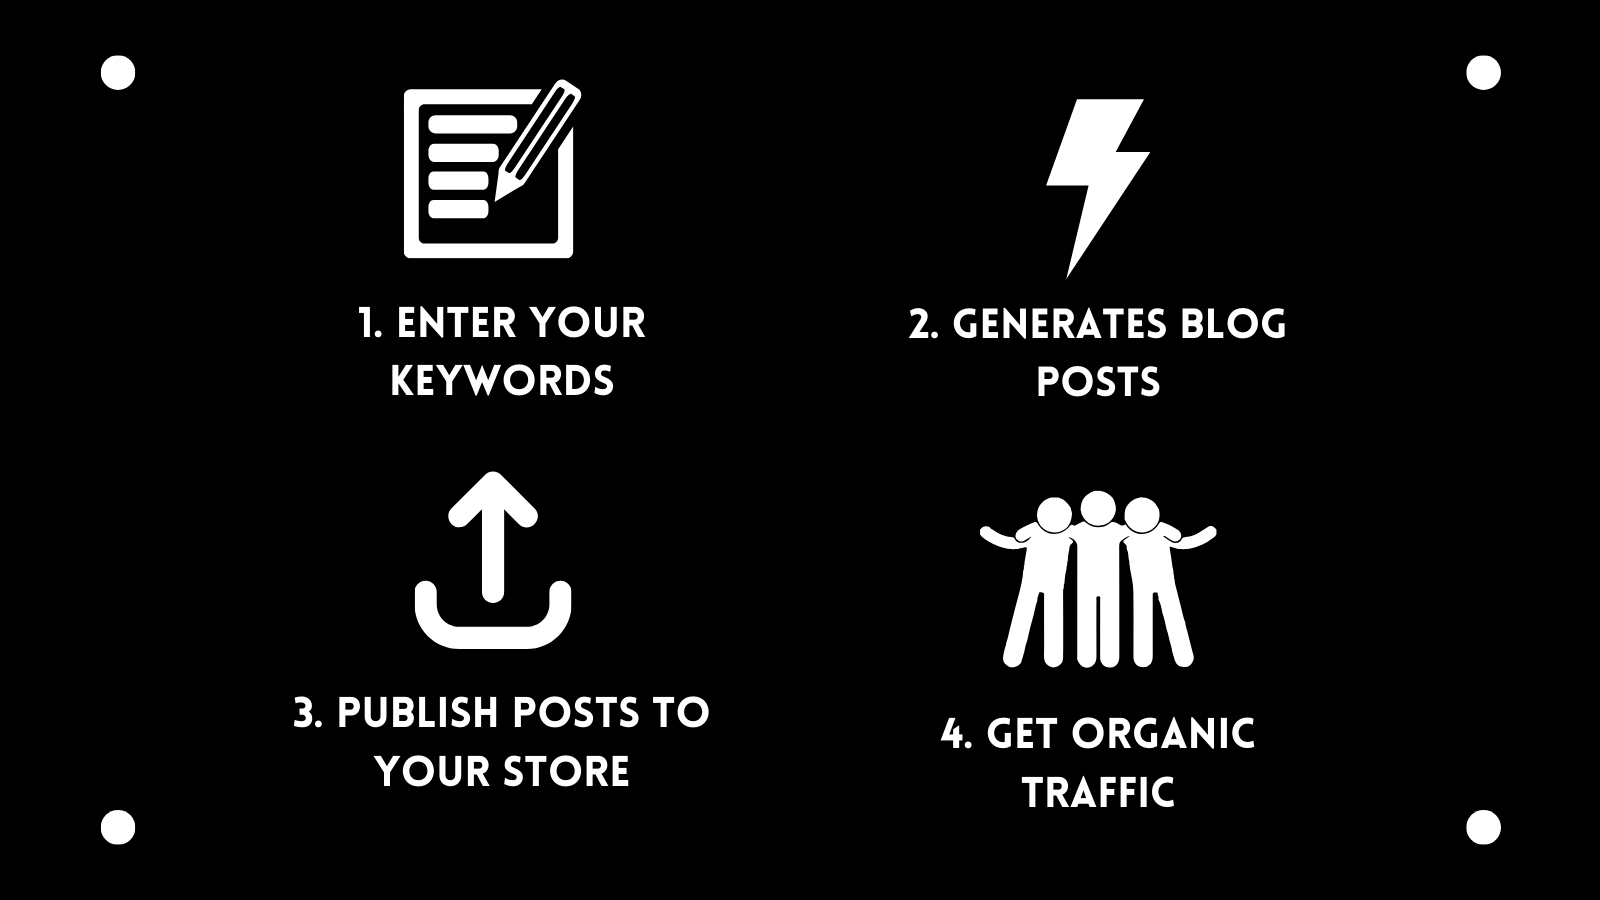 Insira palavras-chave, gere postagens de blog, publique postagens em sua loja